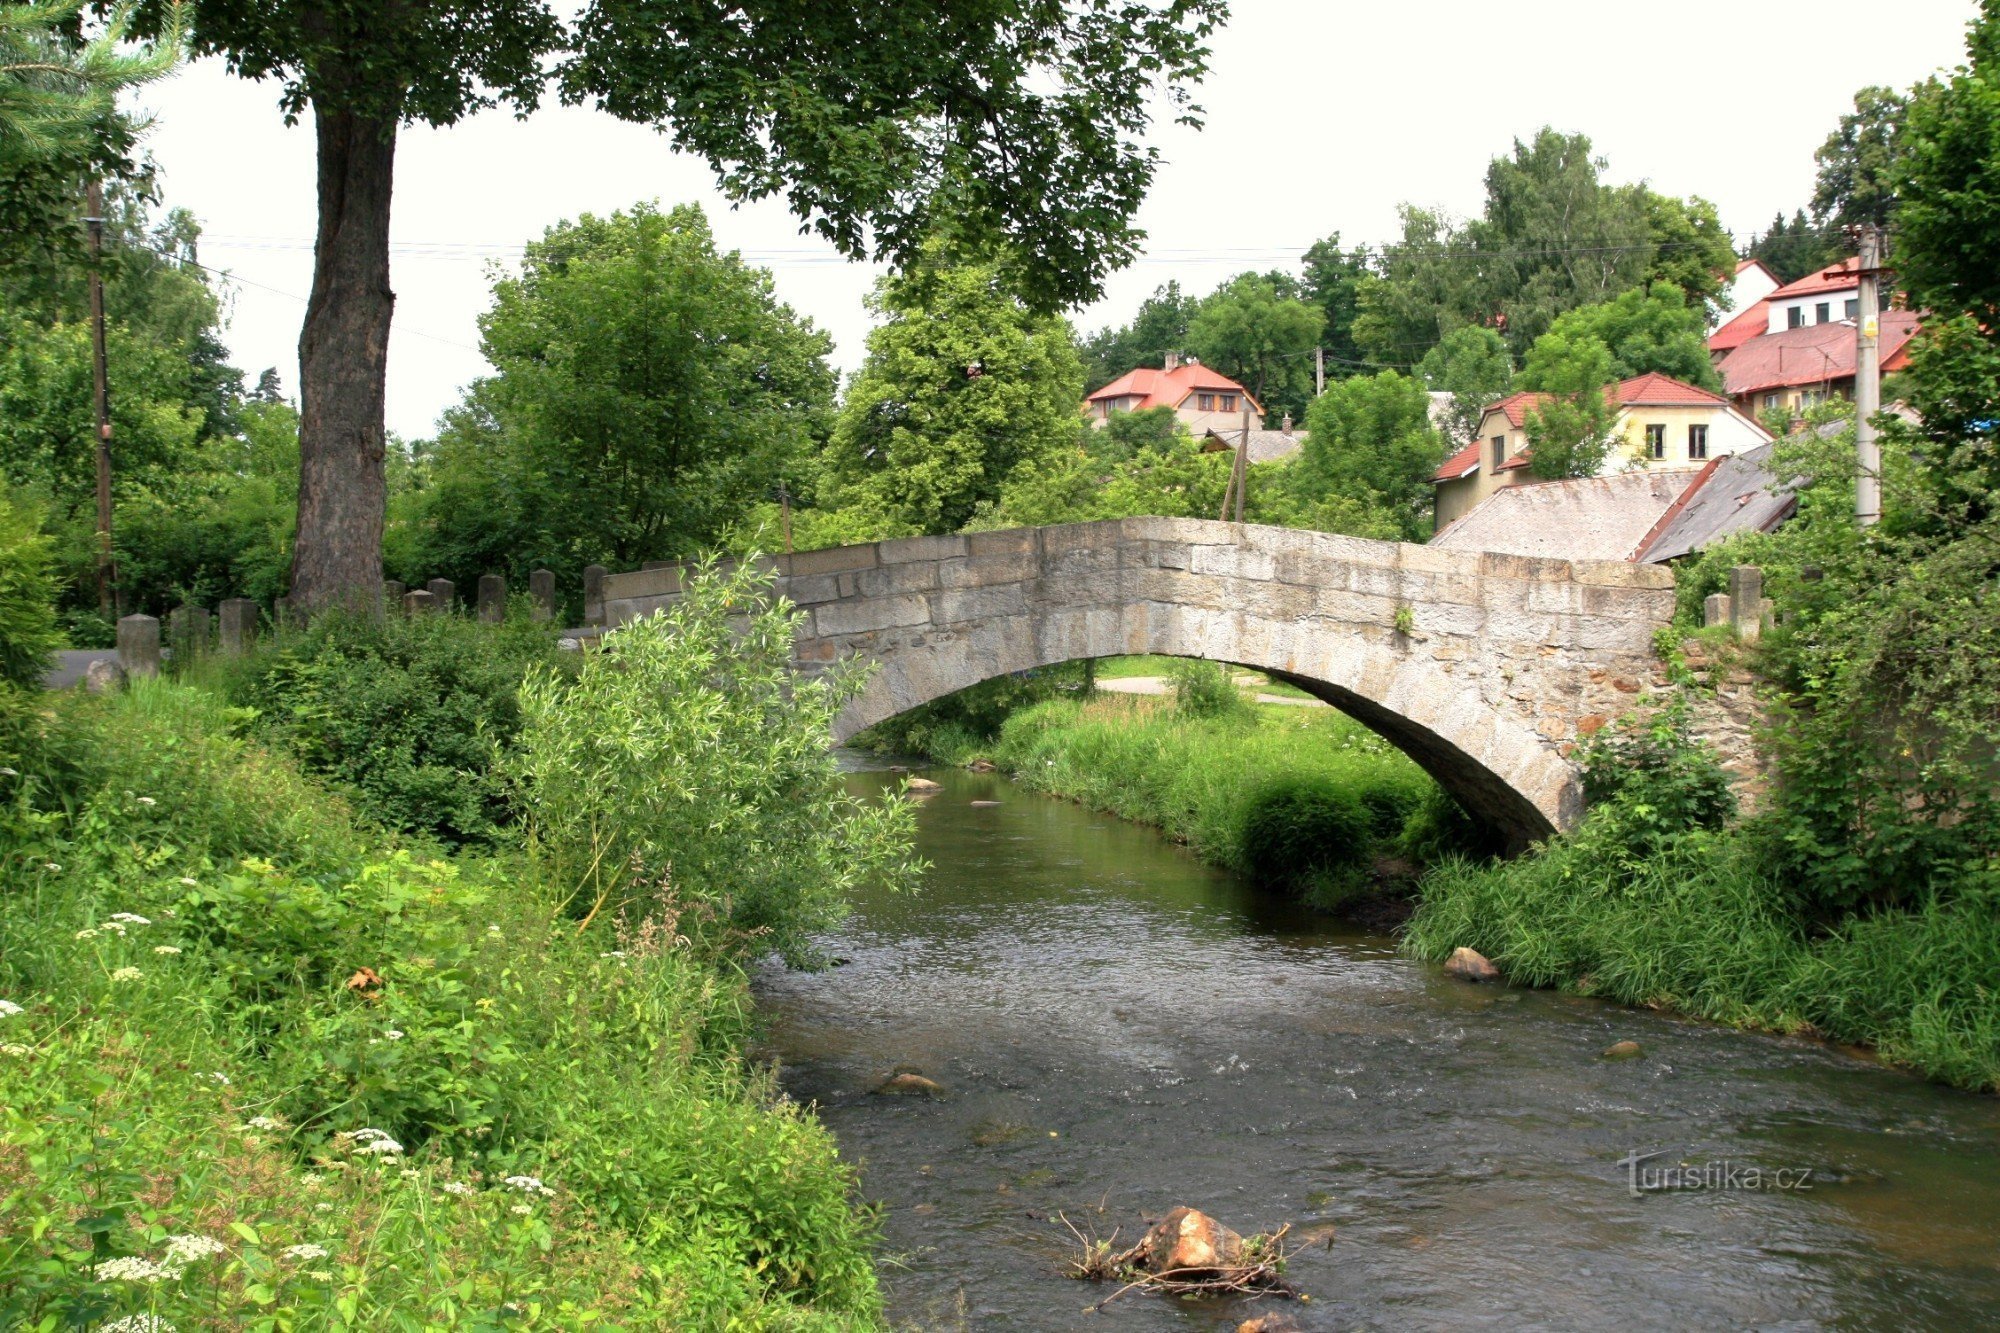 Гамры-над-Сазавой - исторический каменный мост